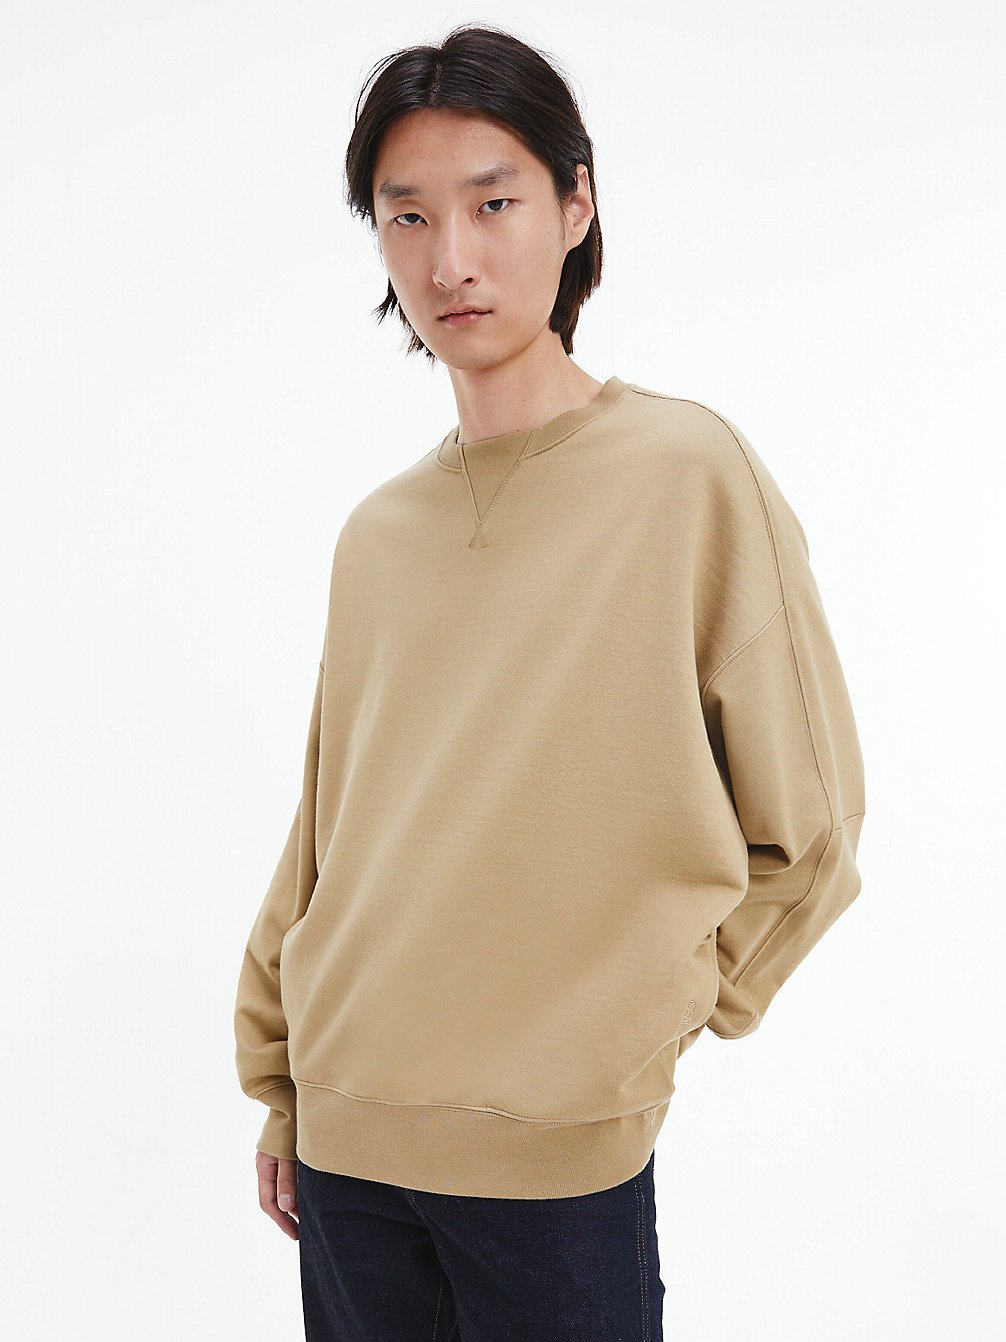 NETTLE Unisex Relaxed Sweatshirt - CK Standards undefined unisex Calvin Klein